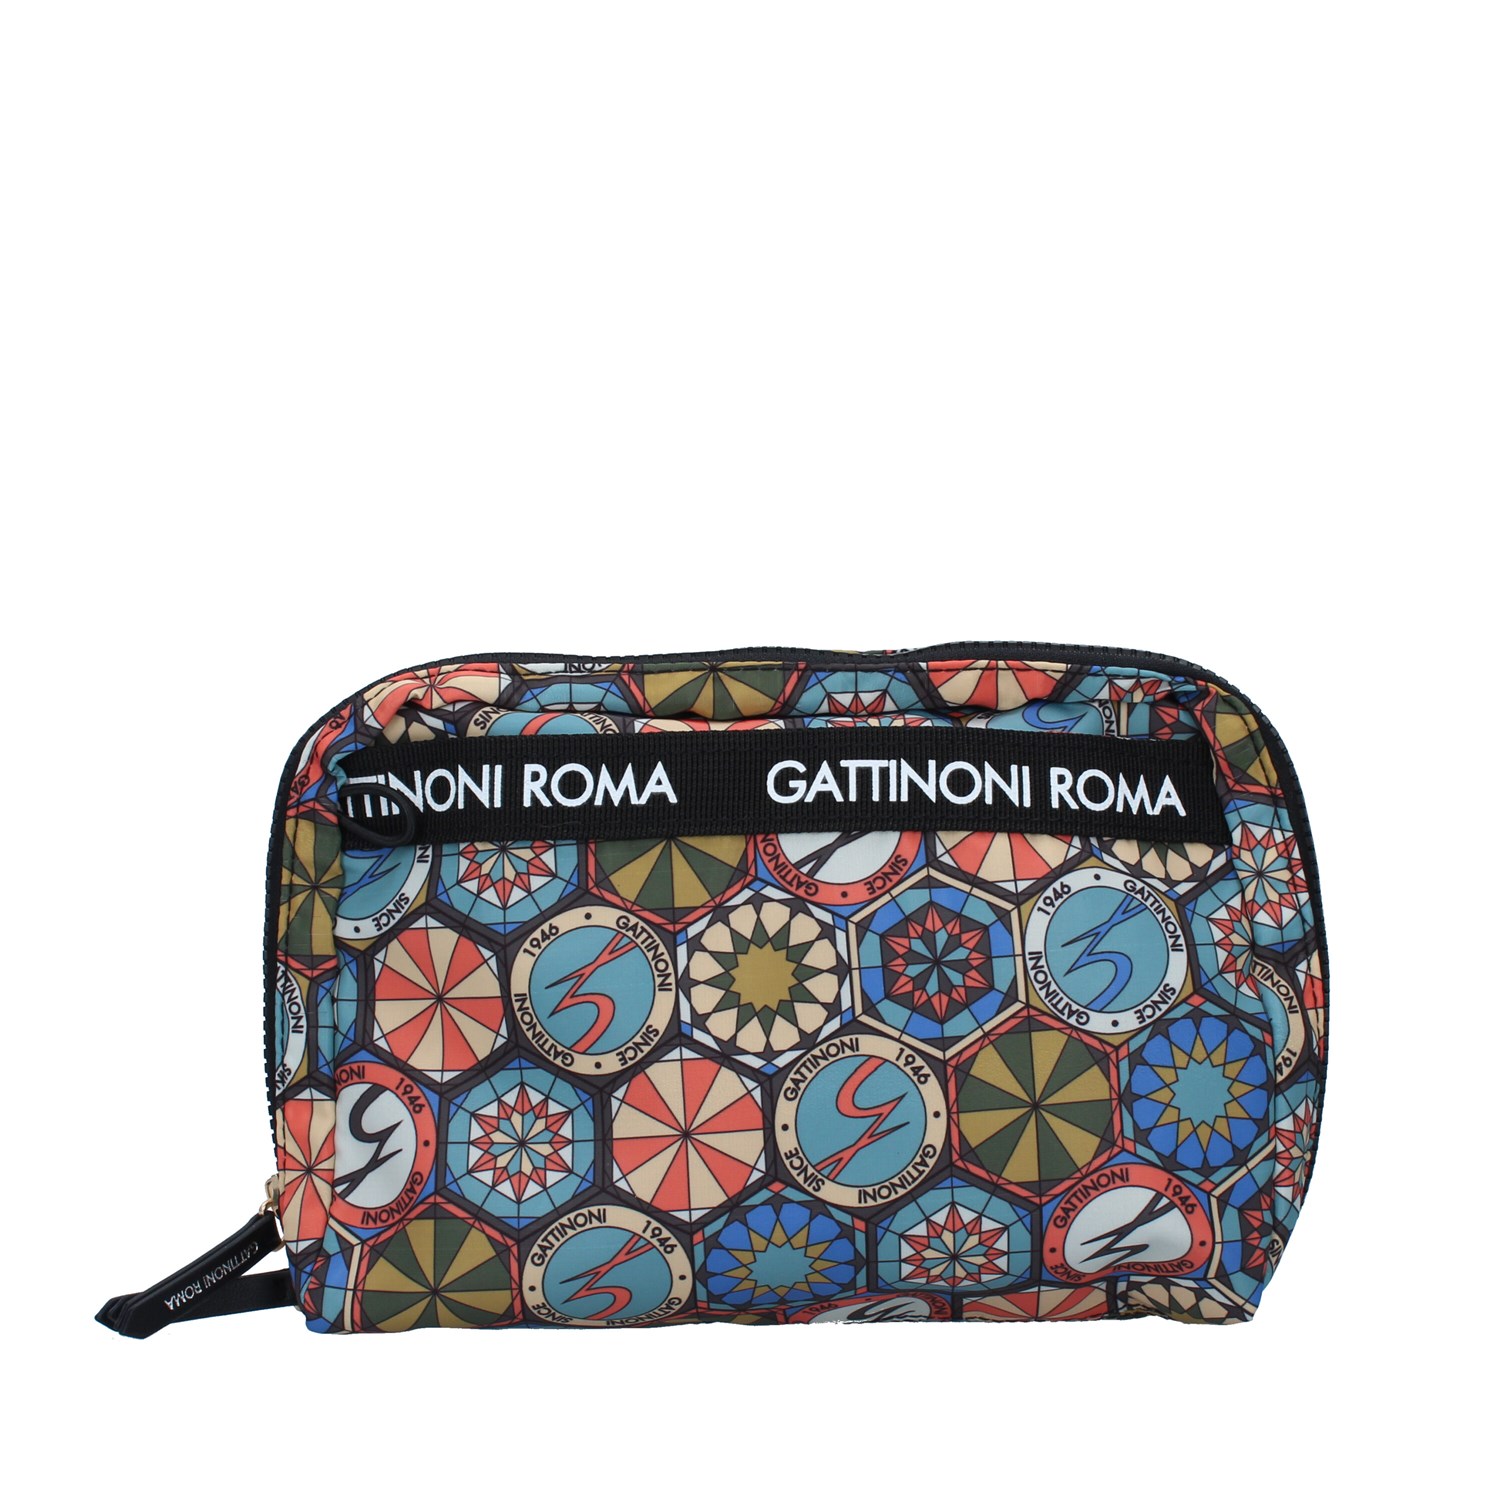 Gattinoni Roma Bags Accessories Clutch WHITE BENTF7687WI